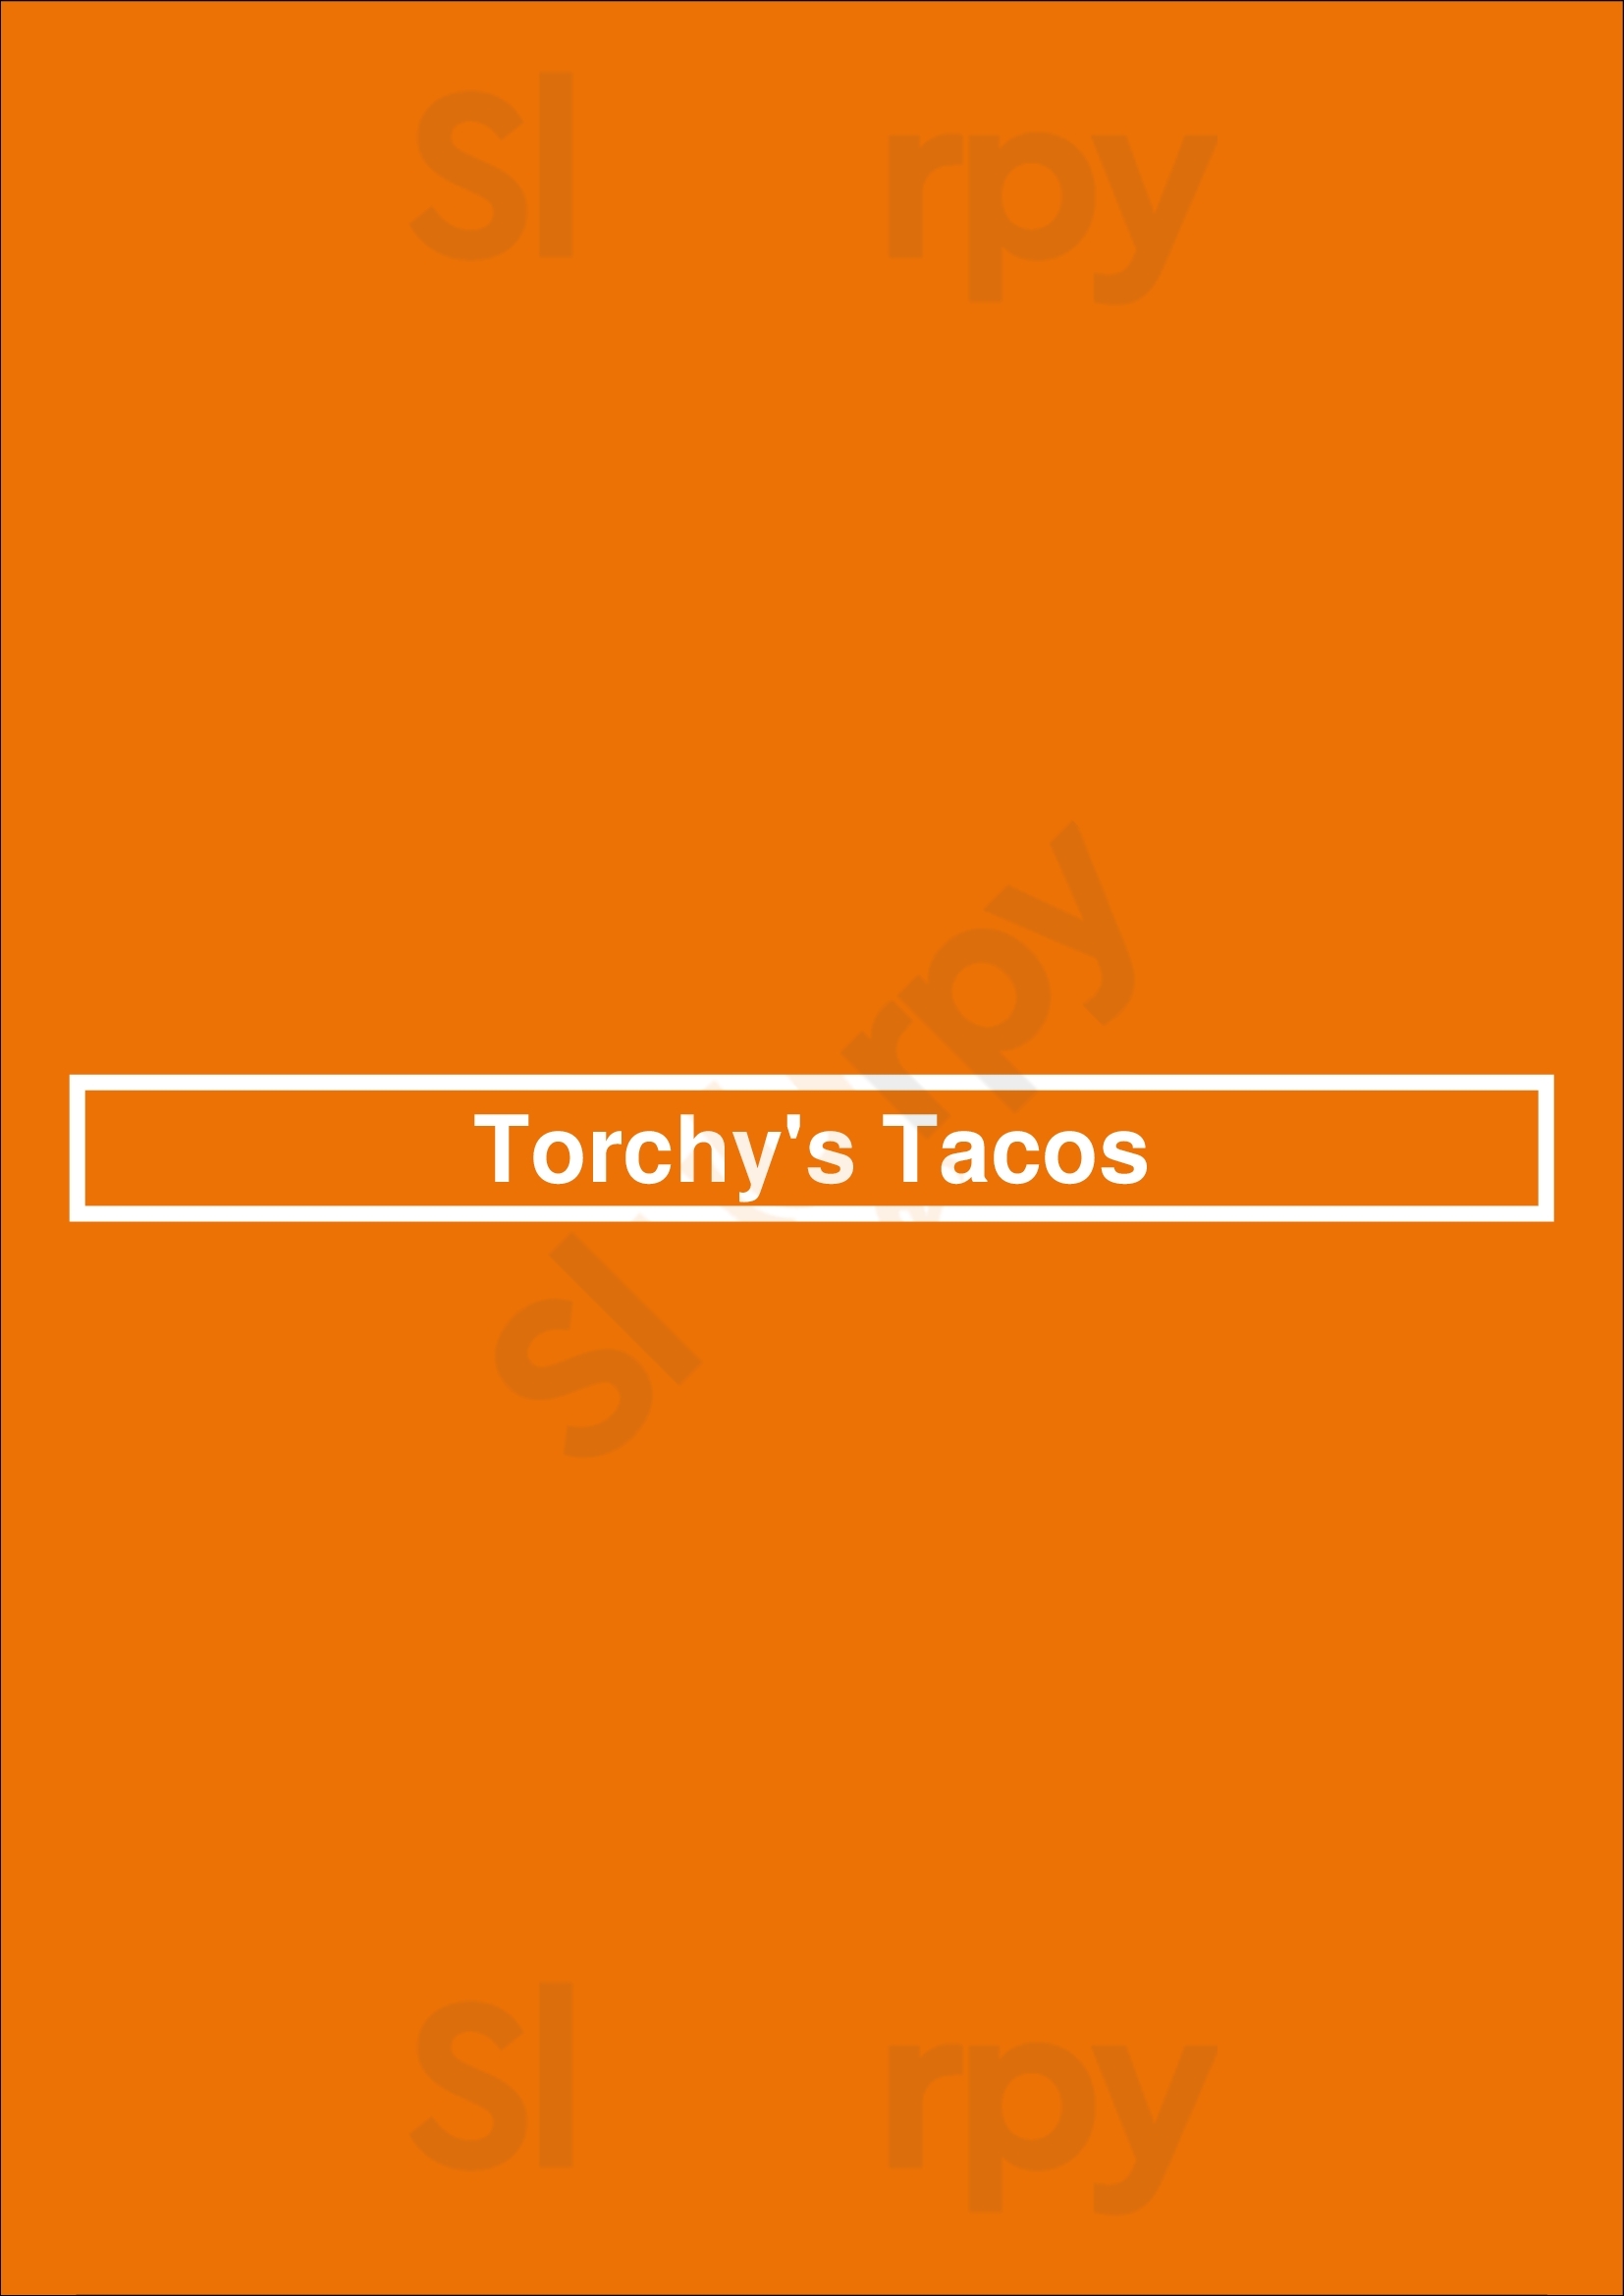 Torchys Tacos Dallas Menu - 1